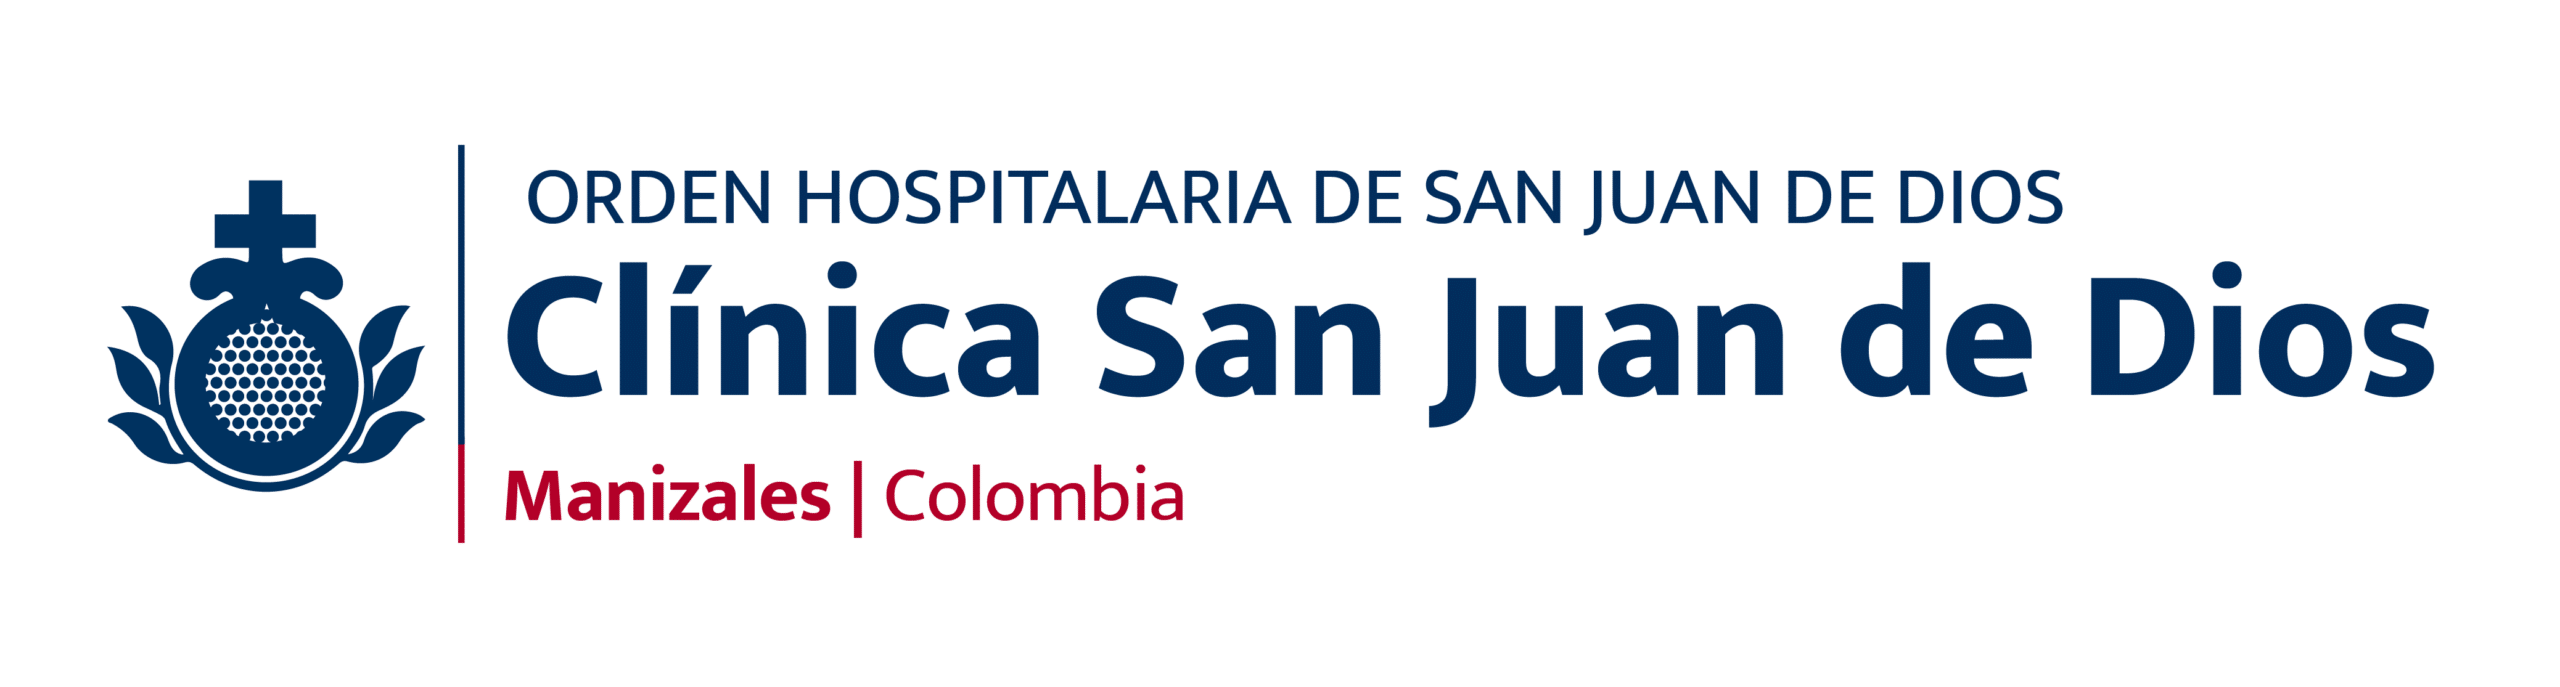 Clínica Psiquiátrica San Juan de Dios | Orden Hospitalaria